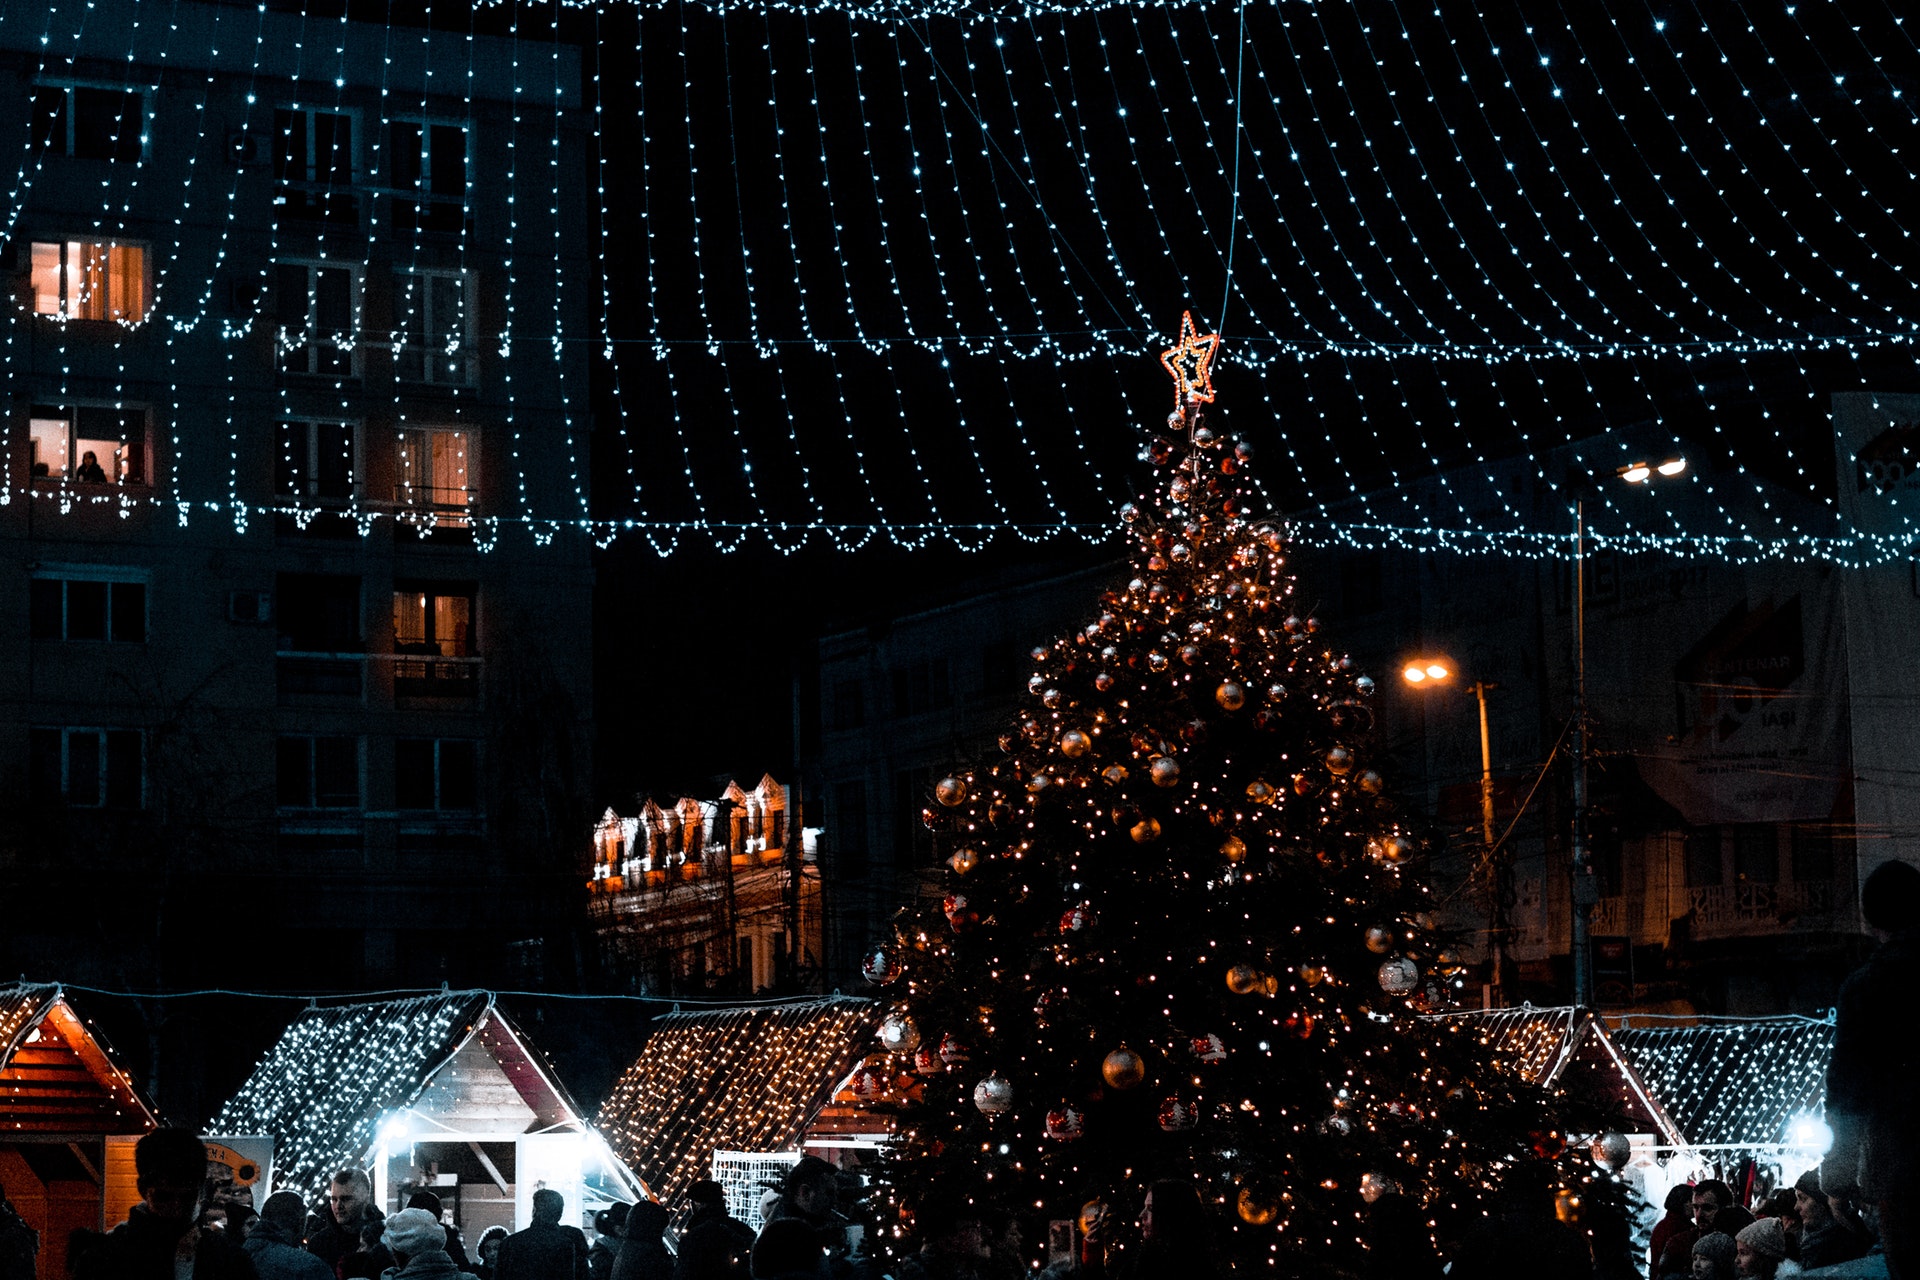 Aria Di Natale.Respirare Aria Di Natale In Valmarecchia Eventi Da Non Perdere E Il Mio Shopping Di Natale